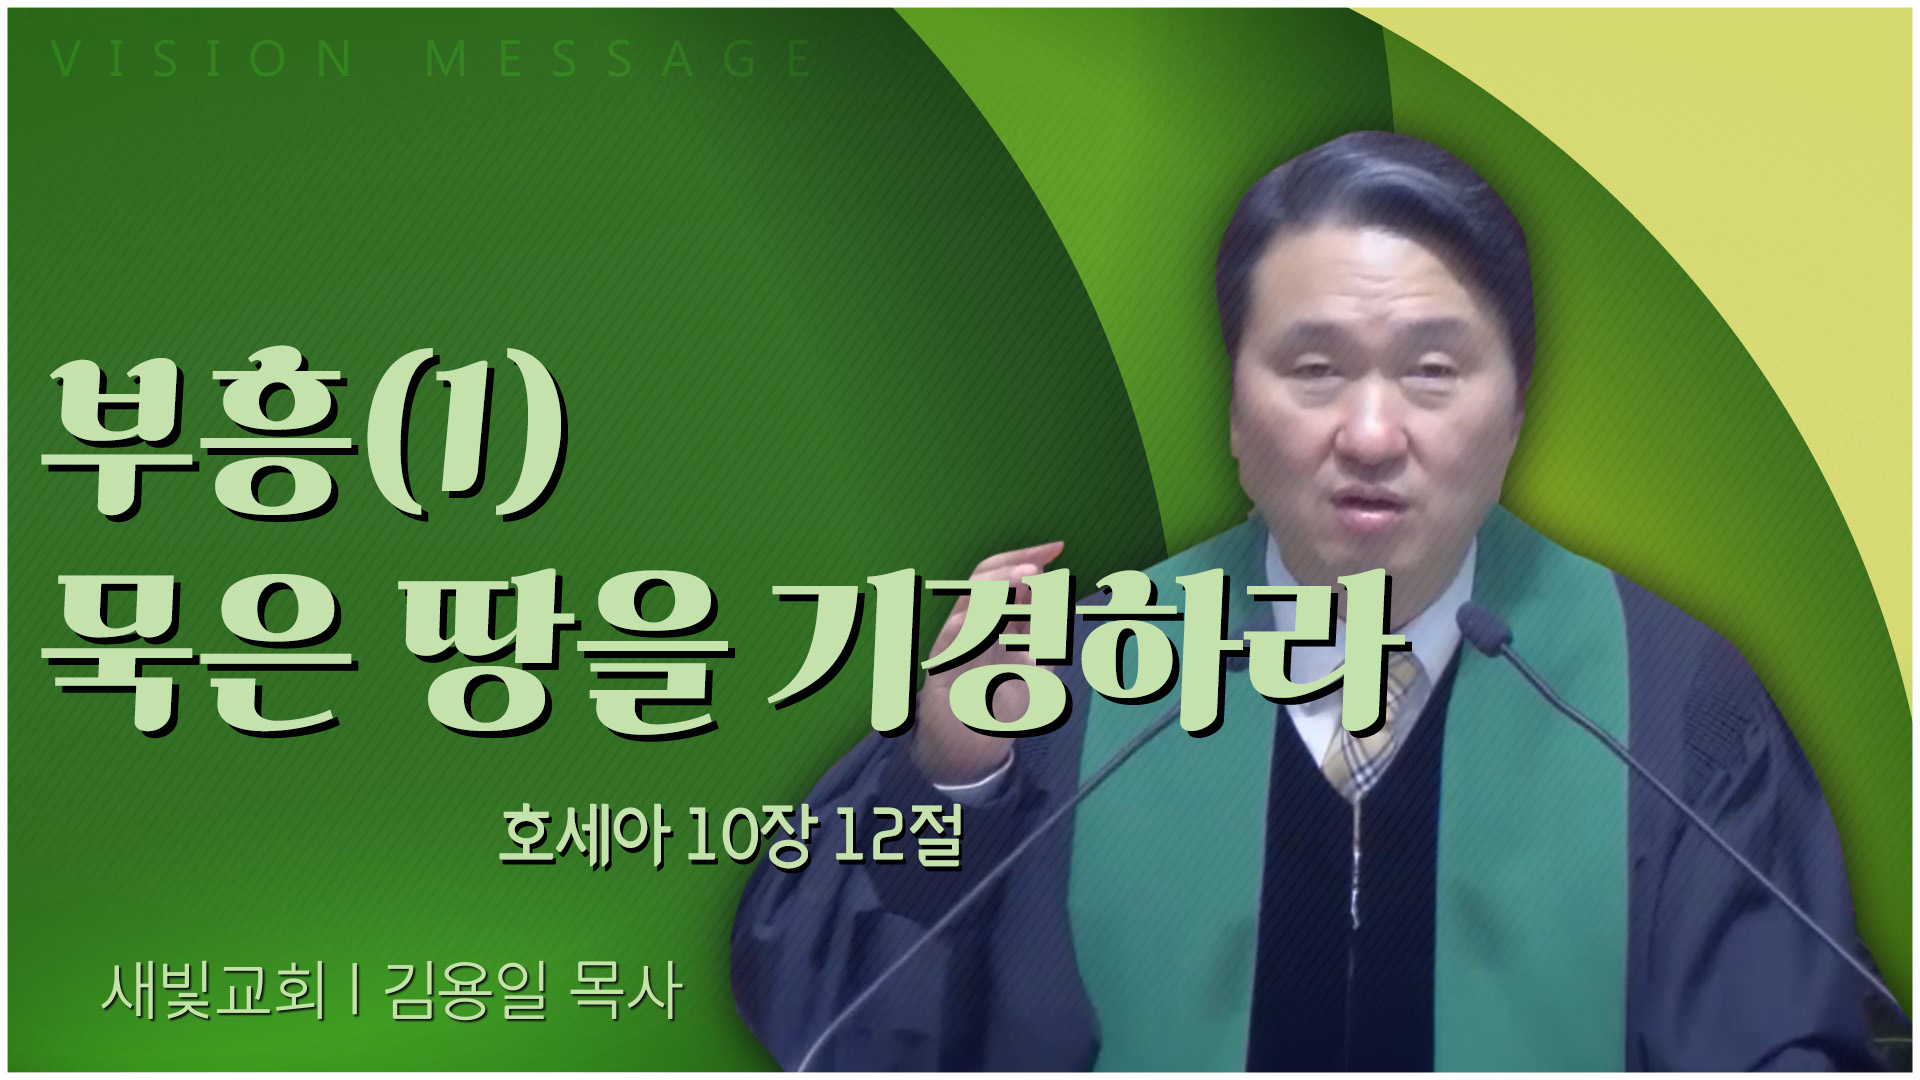 부흥(1) 묵은 땅을 기경하라┃새빛교회 김용일 목사	